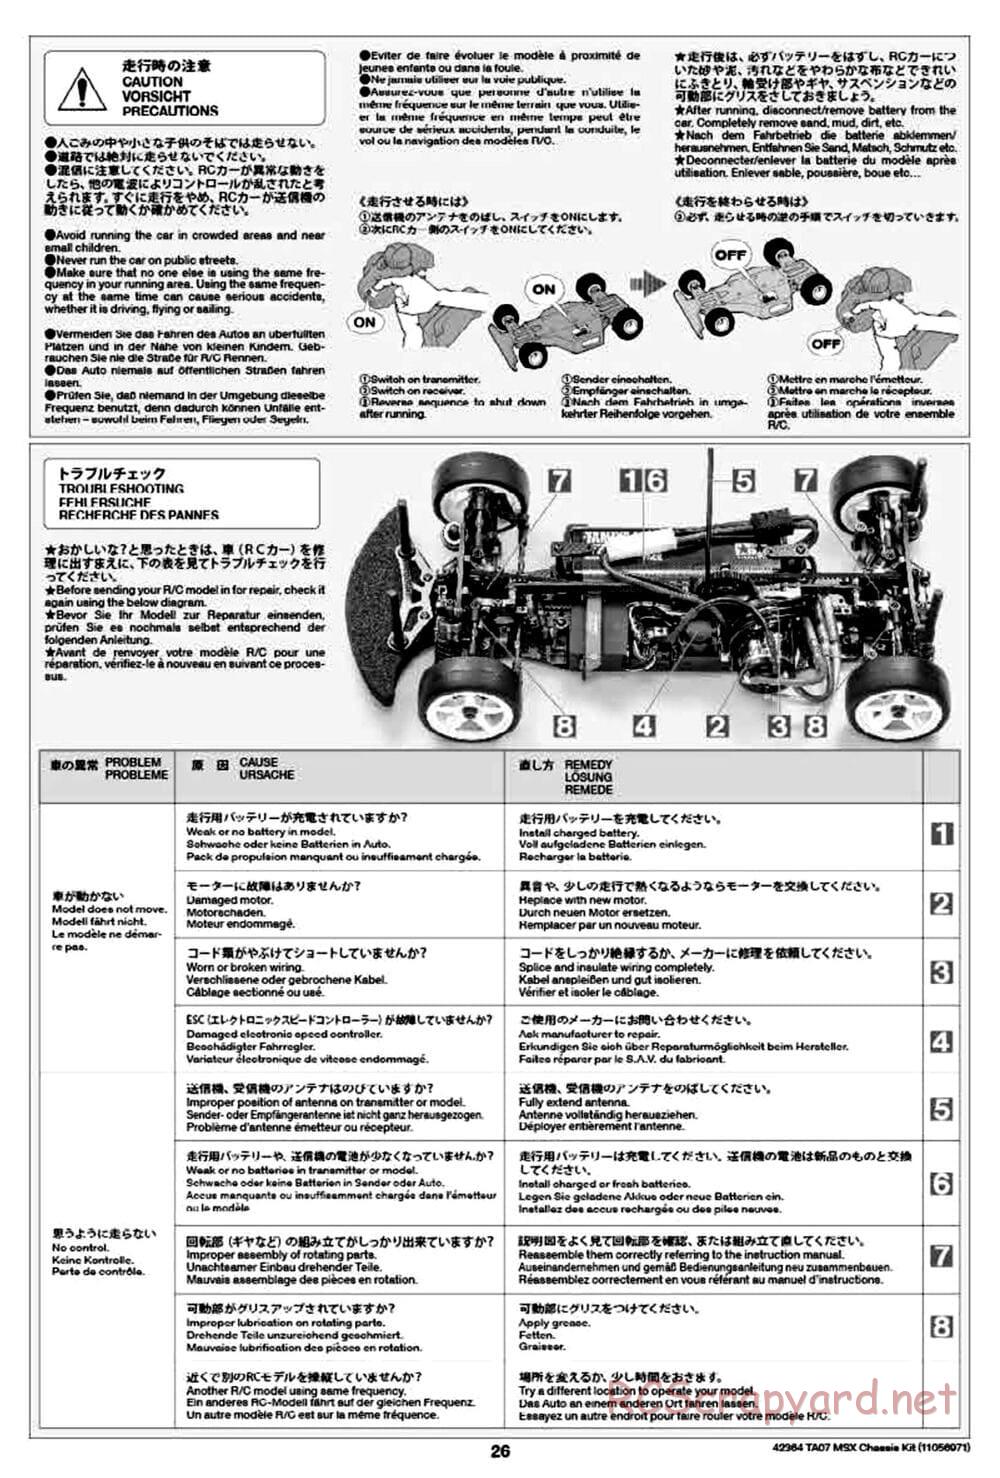 Tamiya - TA07 MSX Chassis - Manual - Page 26